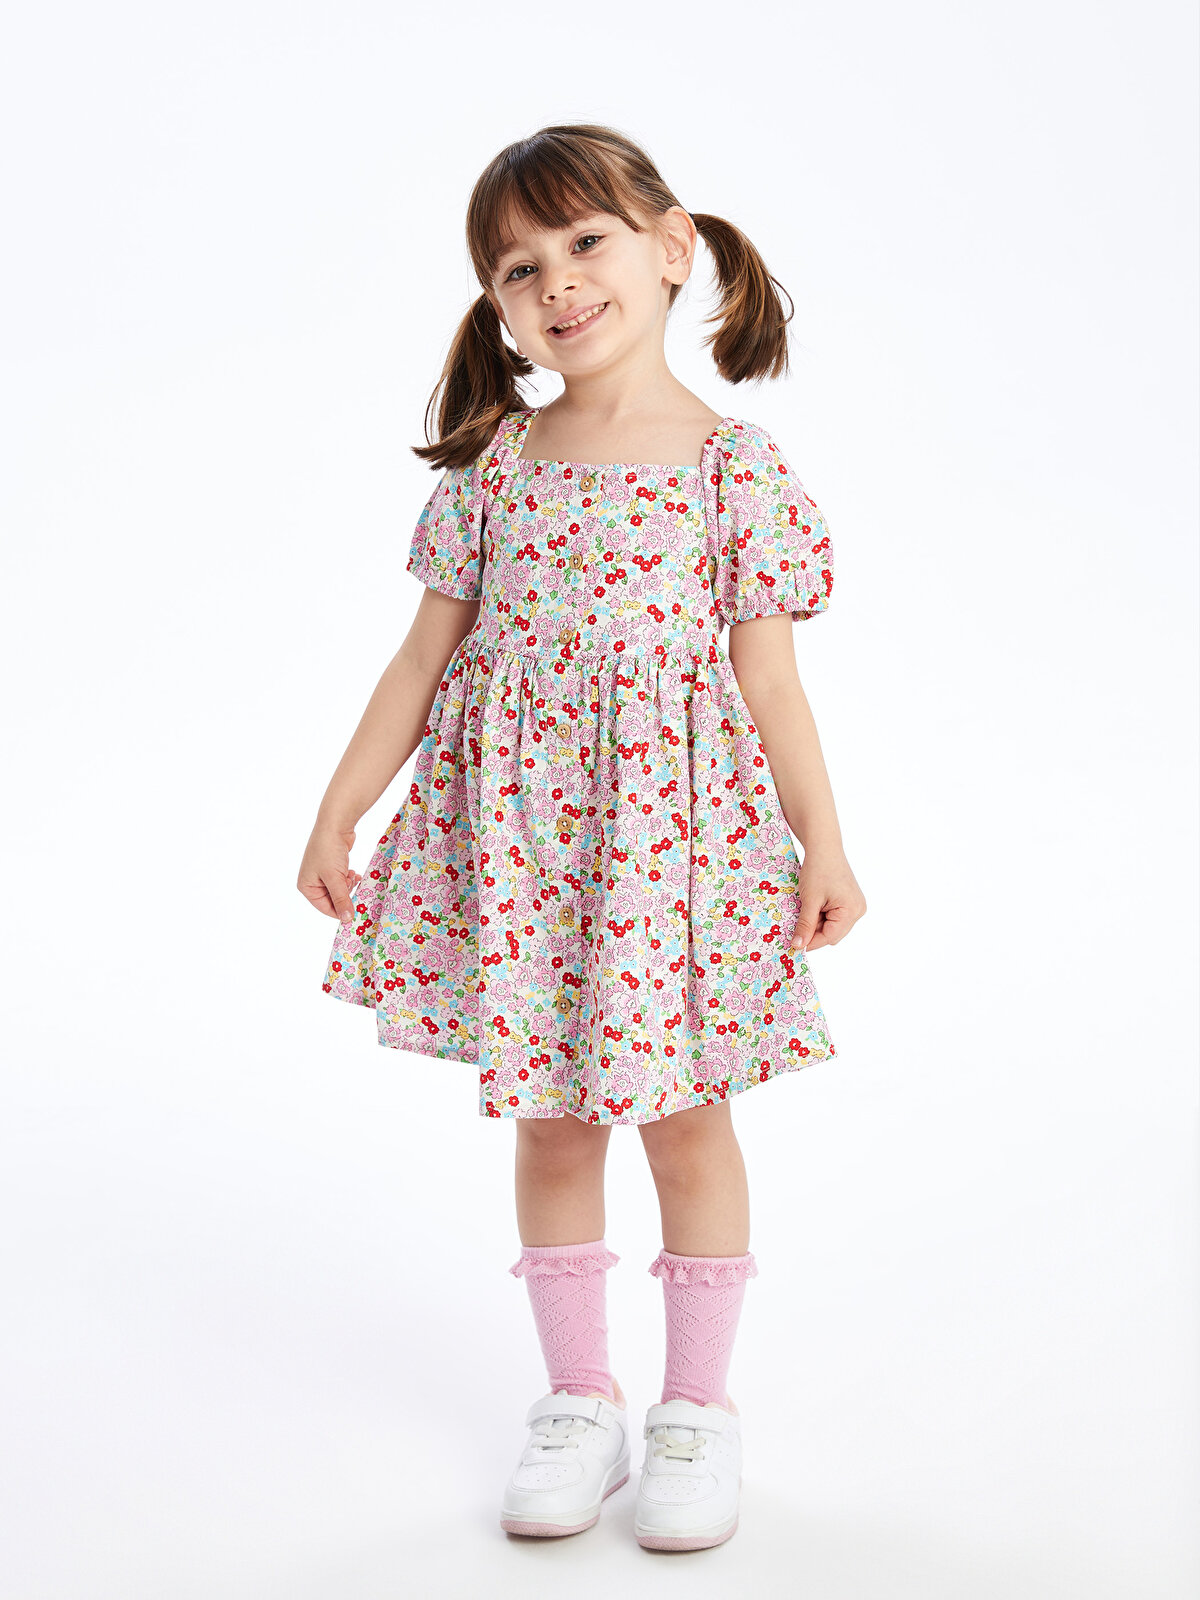 Square Neck Floral Patterned Baby Girl Dress -S4AU07Z1-LT4 